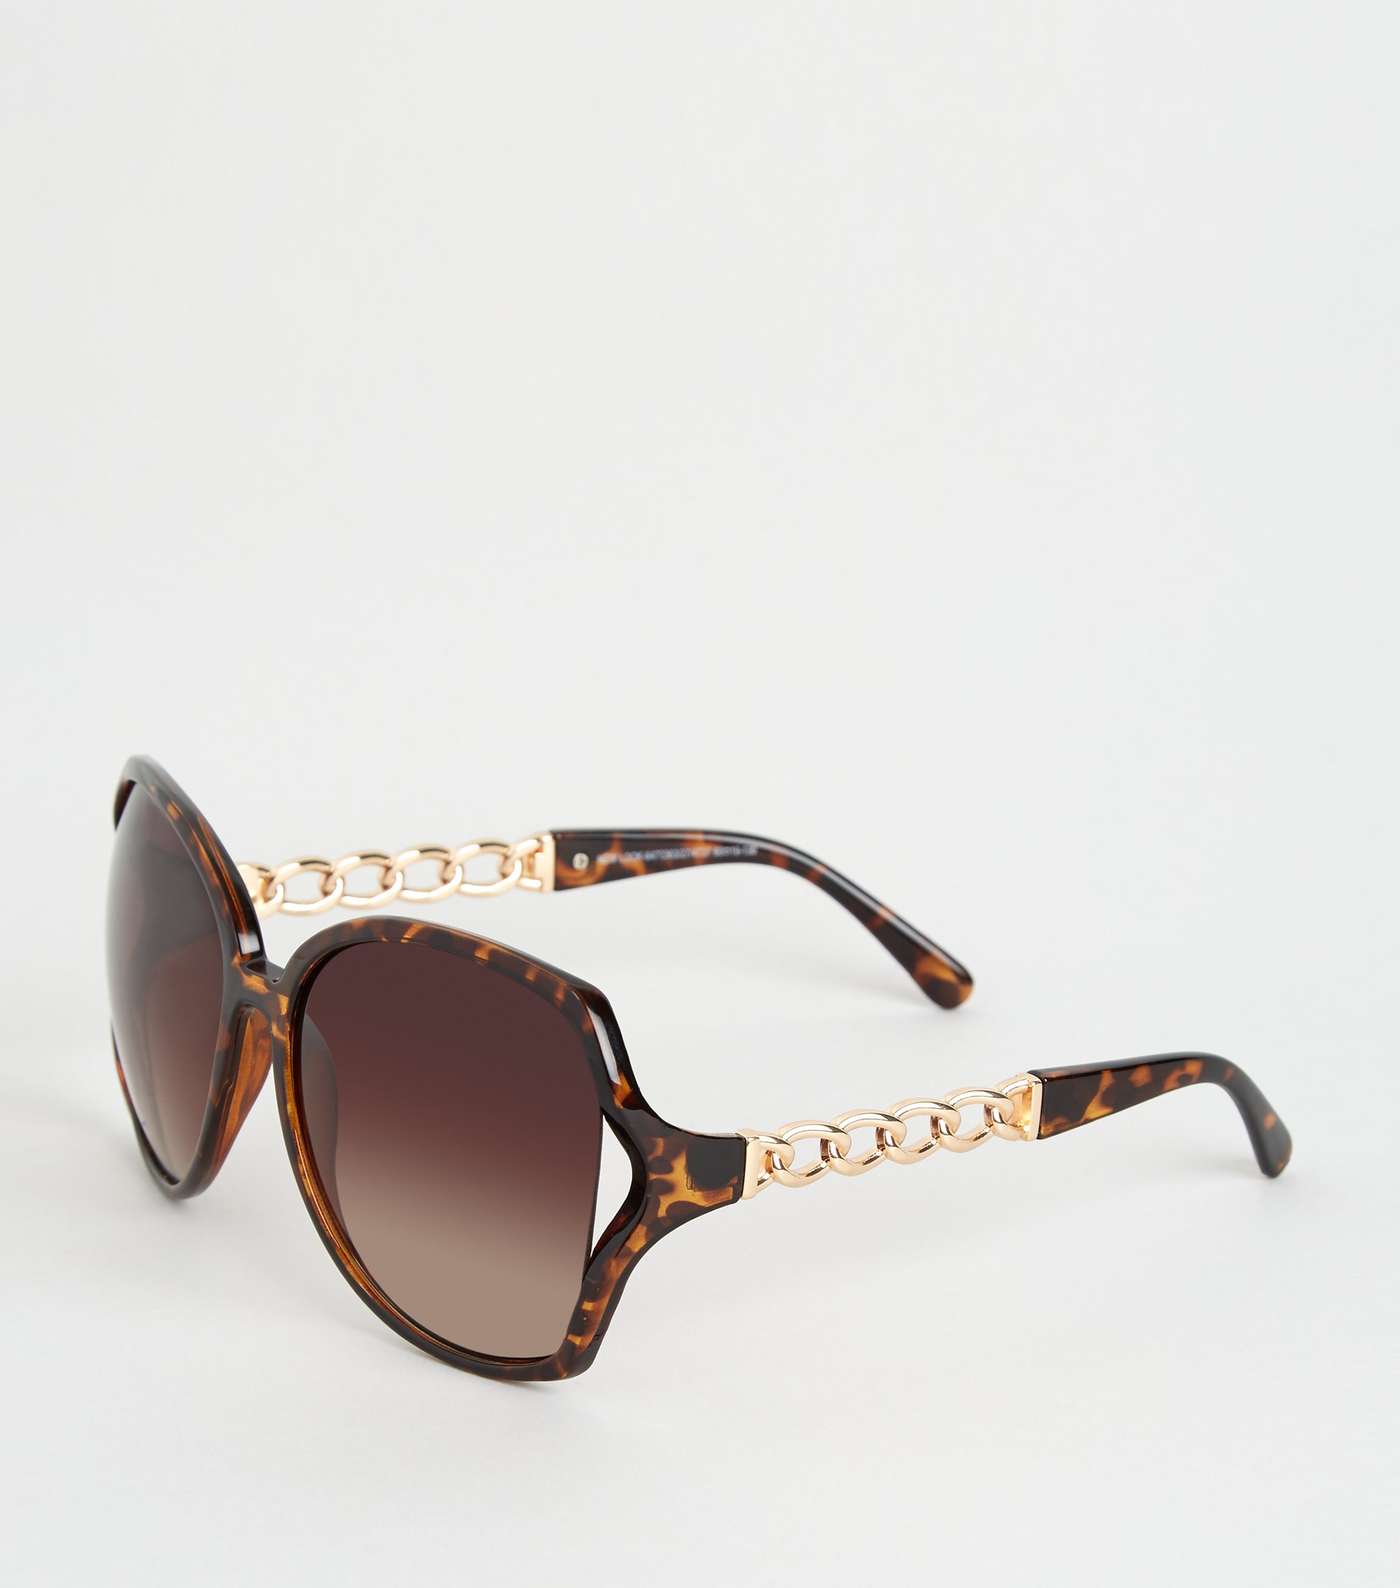 Dark Brown Tortoiseshell Effect Chain Sunglasses